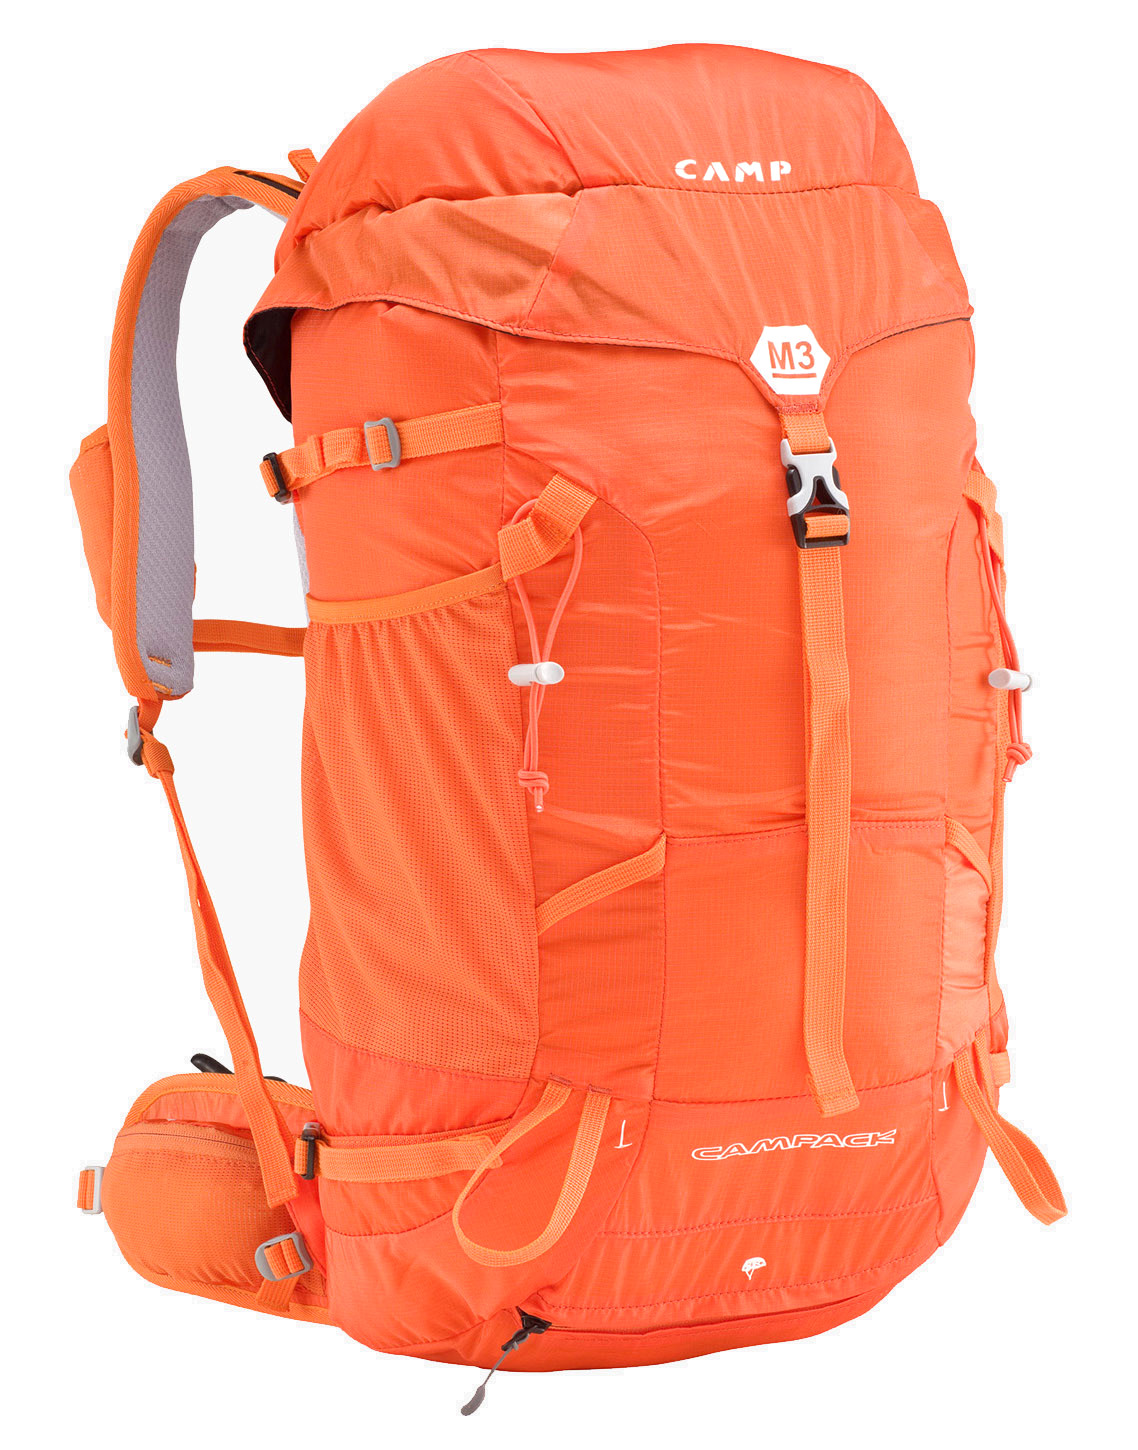 Спортивные туристические рюкзаки. Рюкзак Camp m5. Рюкзак TOREAD Trekking 30. Рюкзак альпинистский 30л. Рюкзак Millet походный оранжевый.